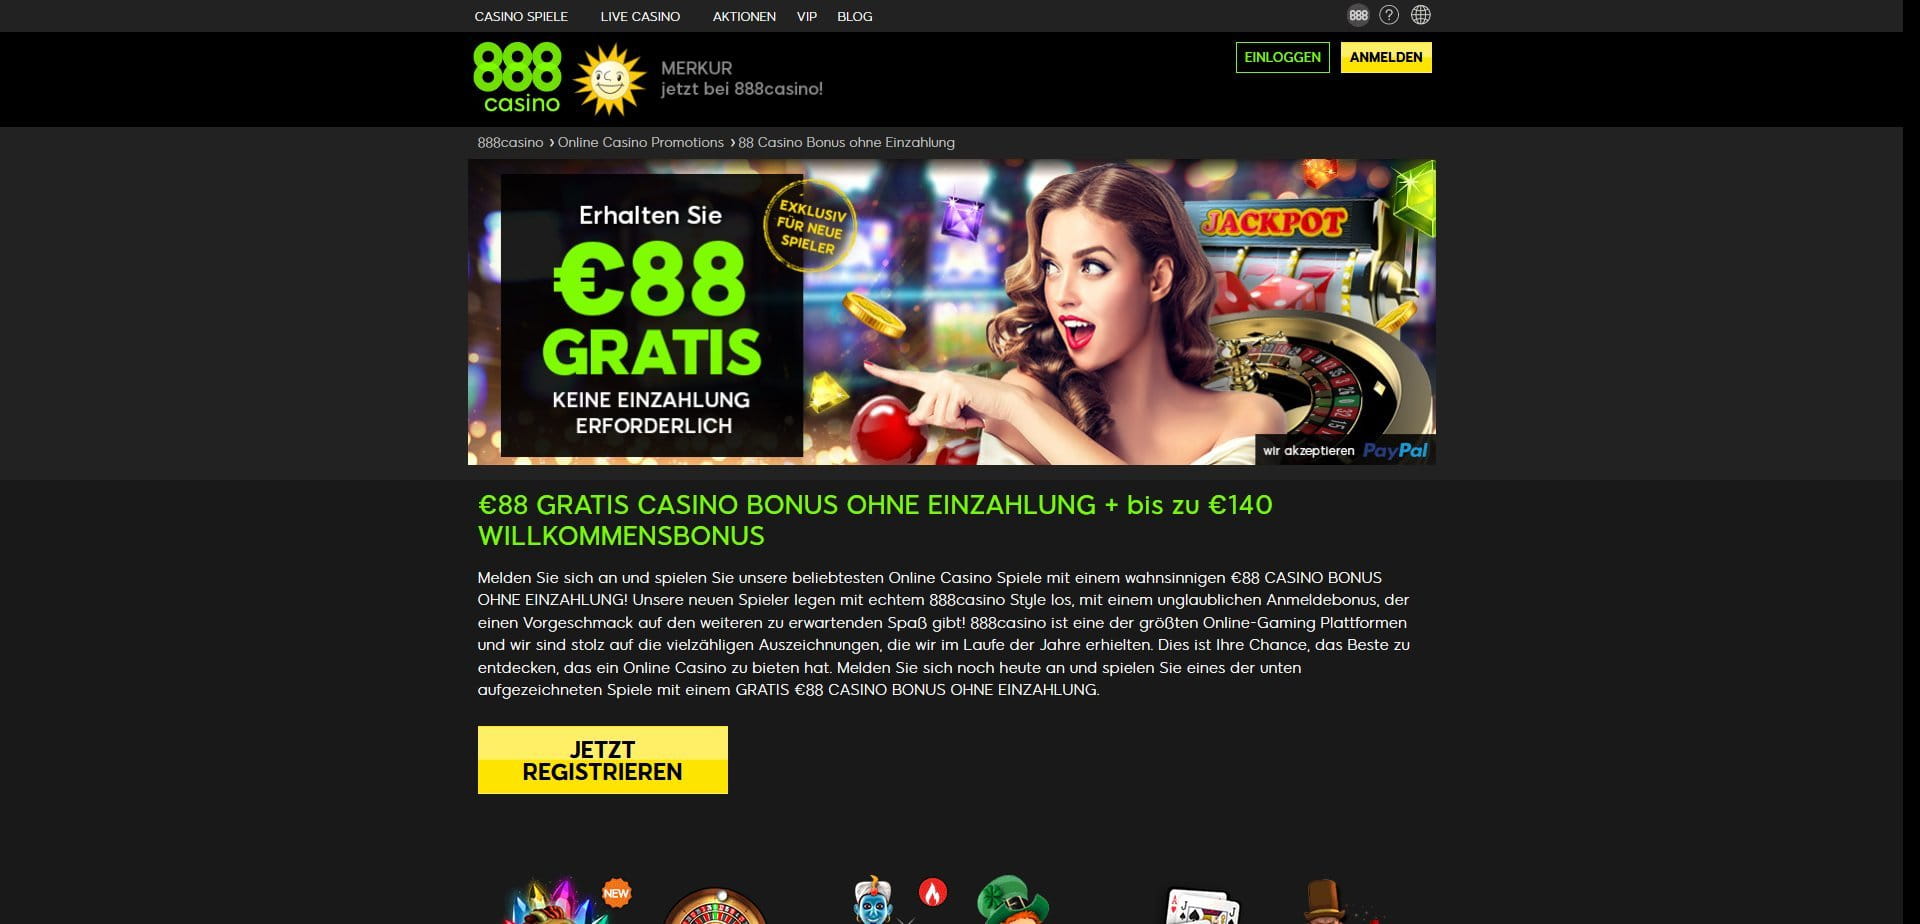 casino online free spins no deposit